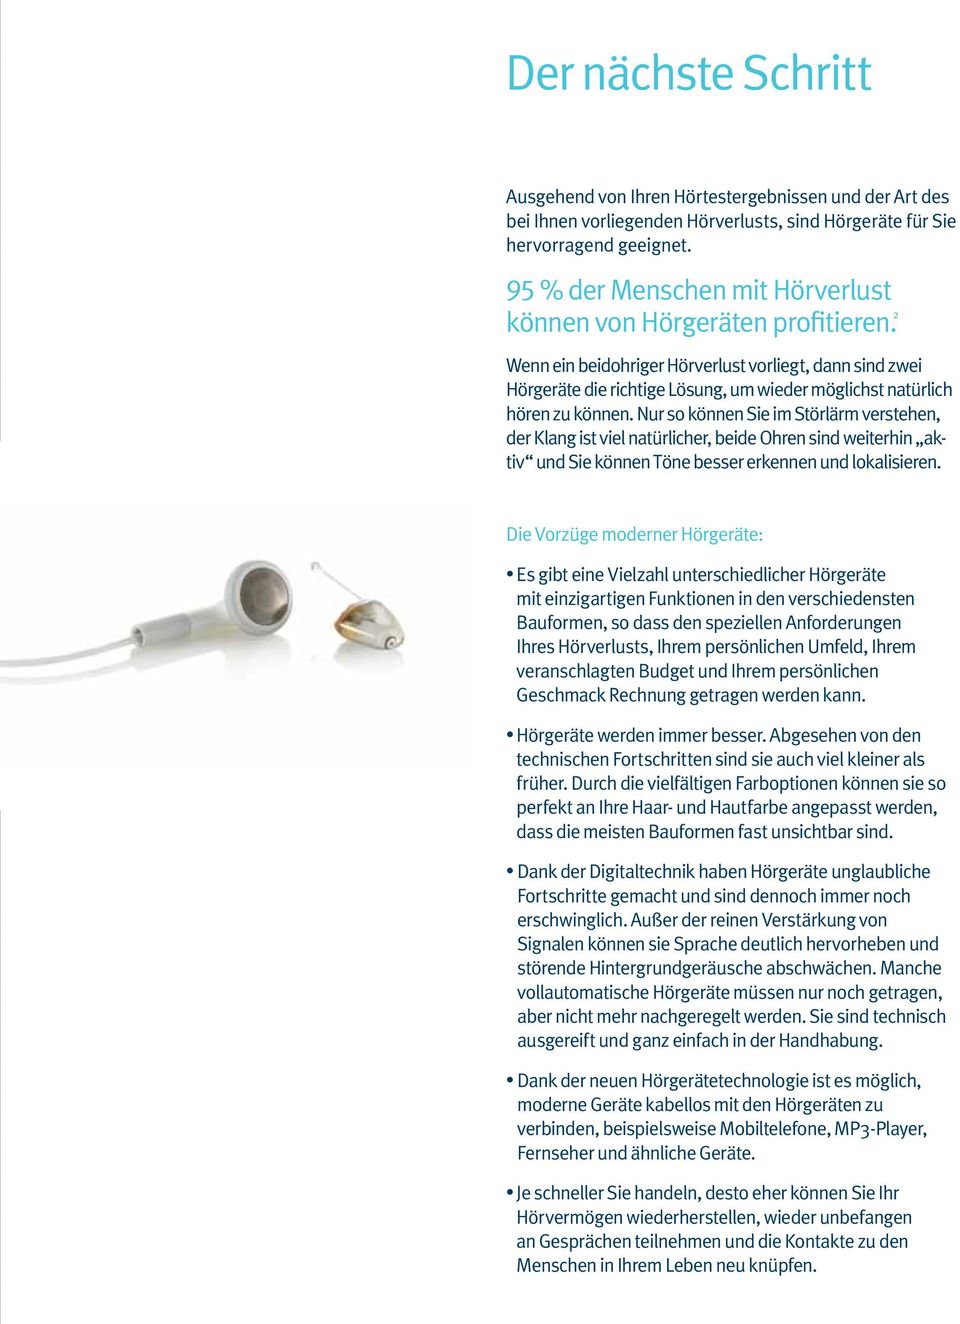 2 Wenn ein beidohriger Hörverlust vorliegt, dann sind zwei Hörgeräte die richtige Lösung, um wieder möglichst natürlich hören zu können.